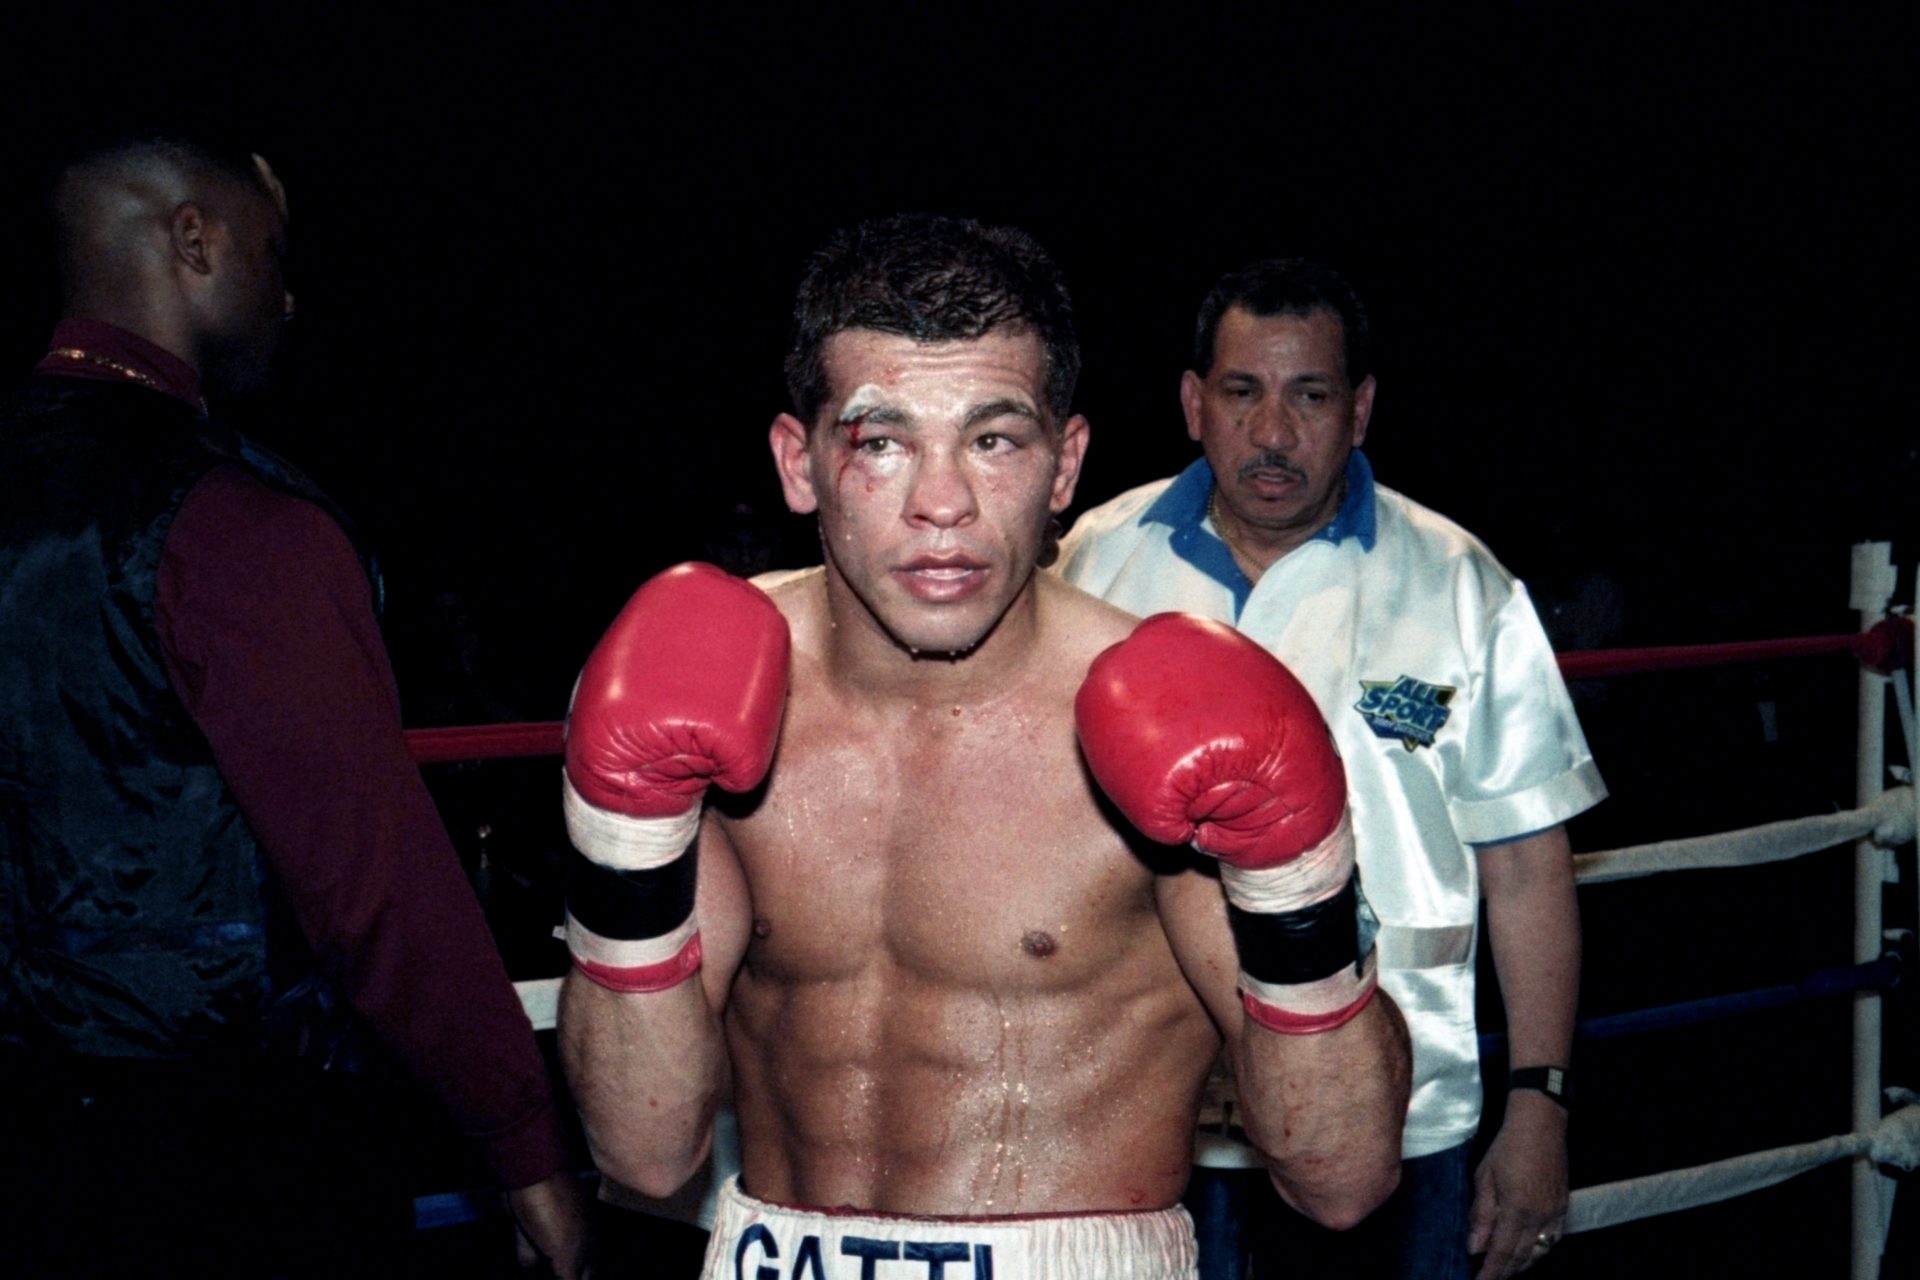 La misteriosa muerte del campeón de boxeo Arturo Gatti